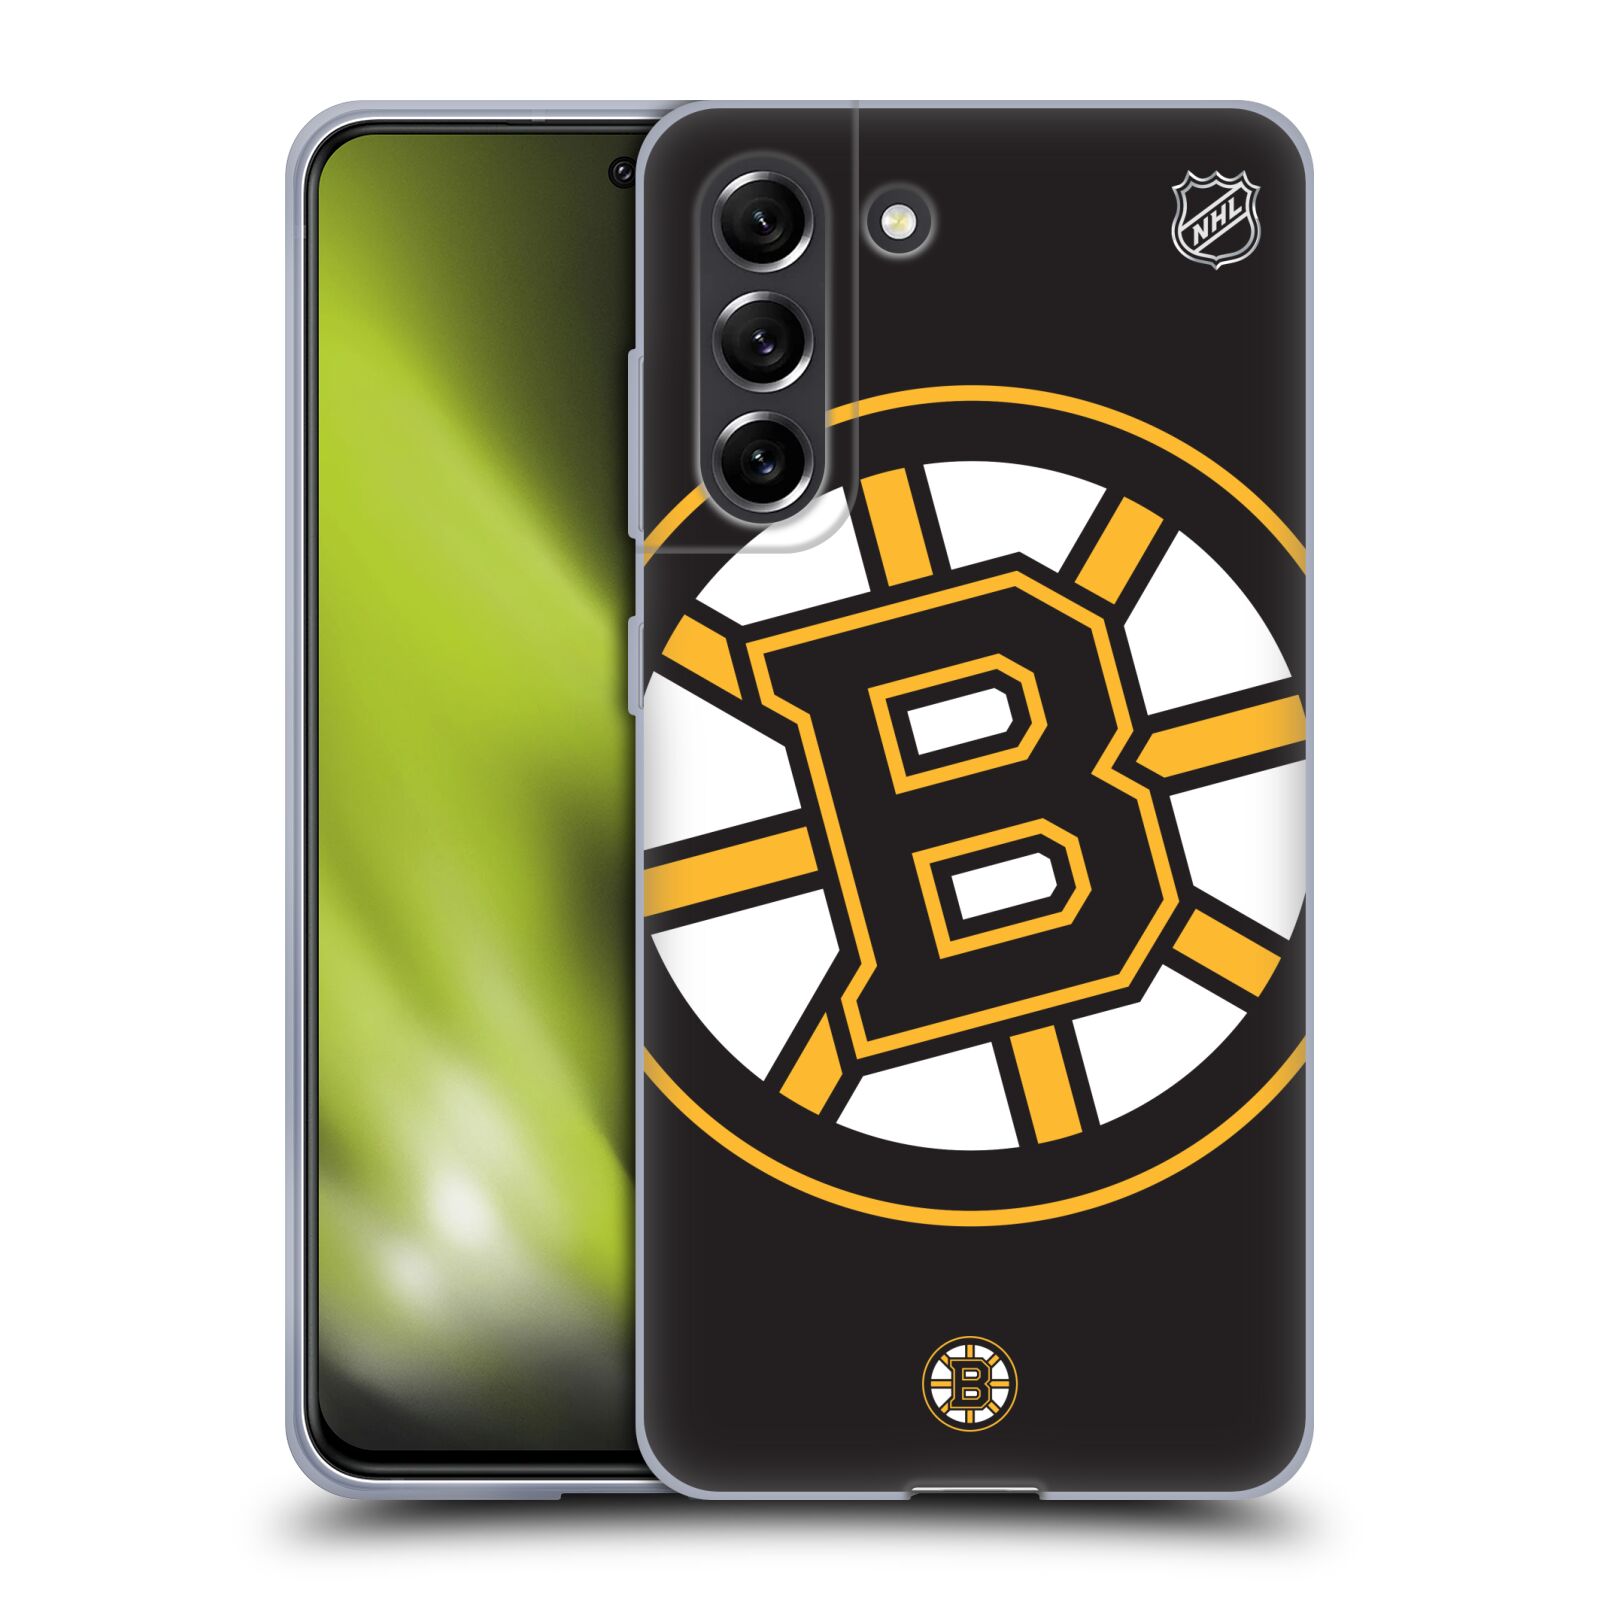 Silikonové pouzdro na mobil Samsung Galaxy S21 FE 5G - NHL - Velké logo Boston Bruins (Silikonový kryt, obal, pouzdro na mobilní telefon Samsung Galaxy S21 FE 5G s licencovaným motivem NHL - Velké logo Boston Bruins)